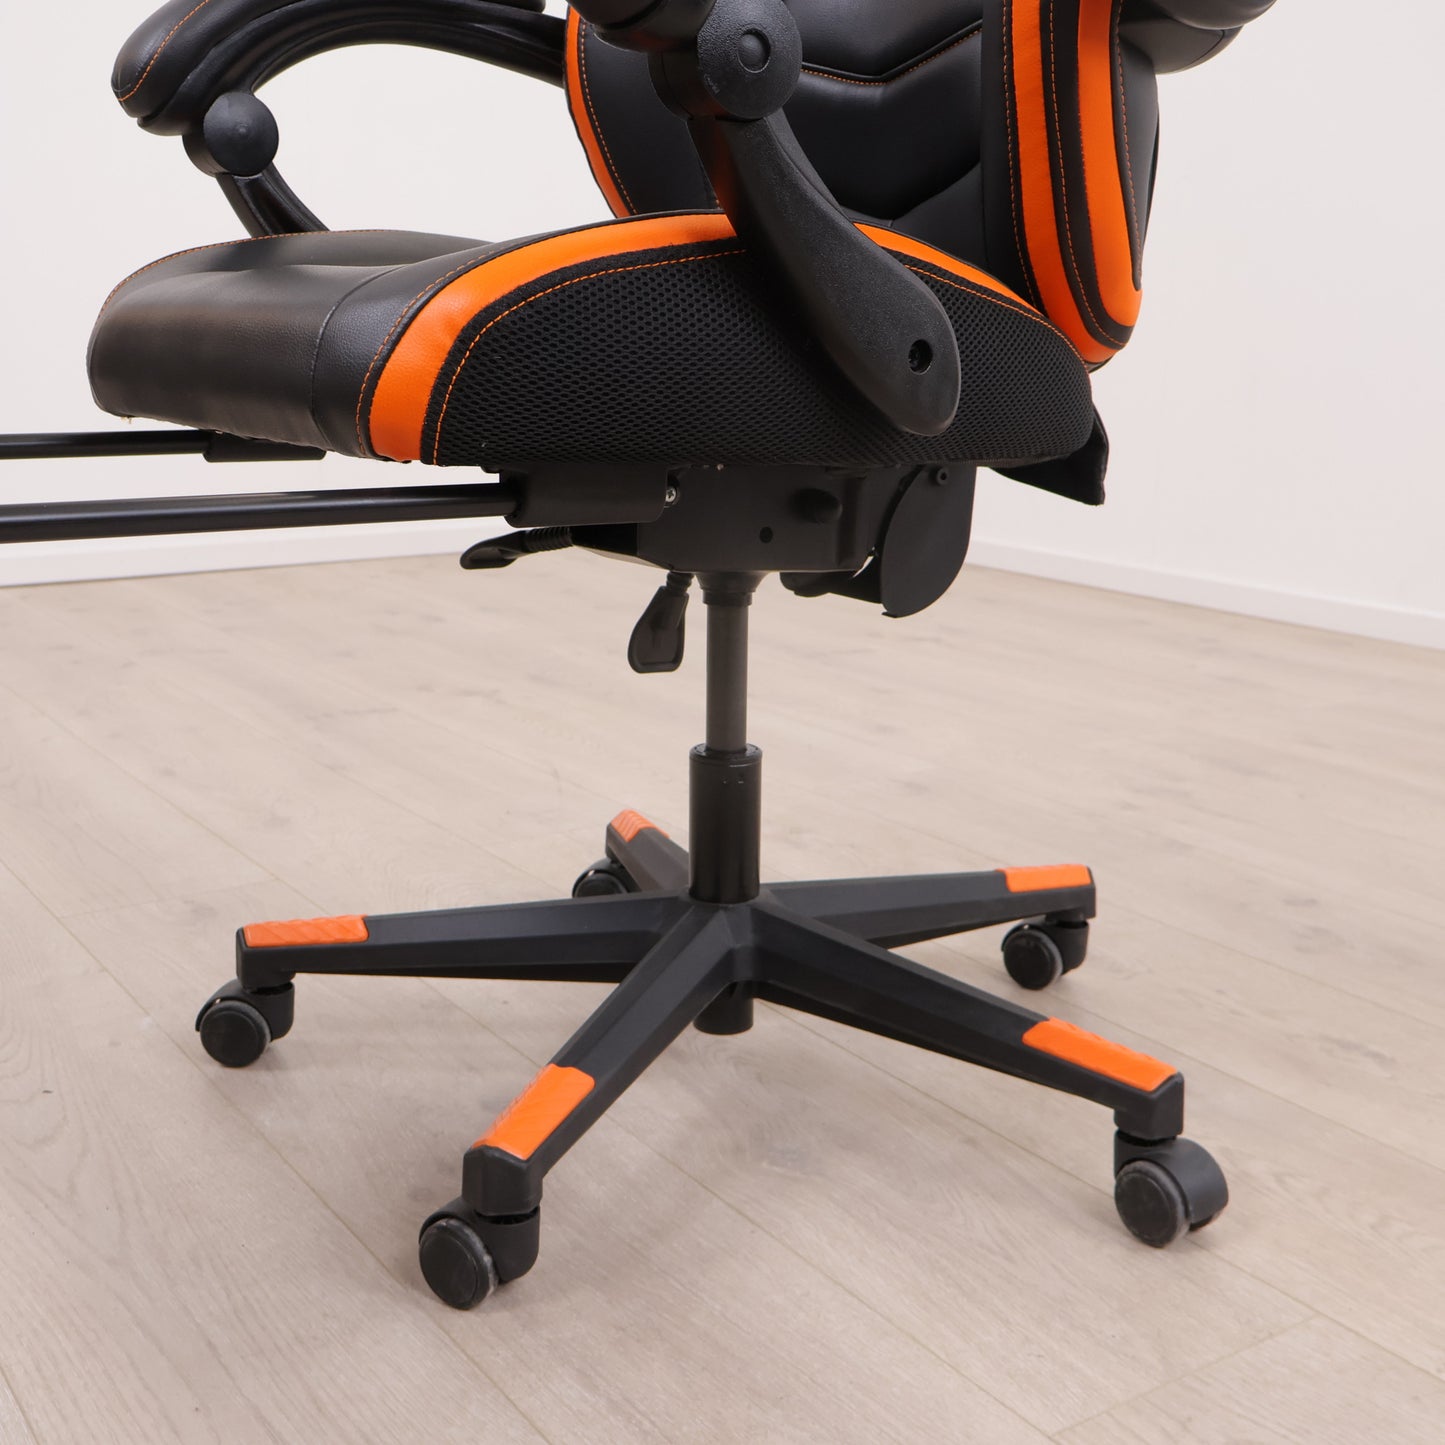 Kun brukt til utstilling | Gamborg gamingstol i svart/oransje med fotstøtte